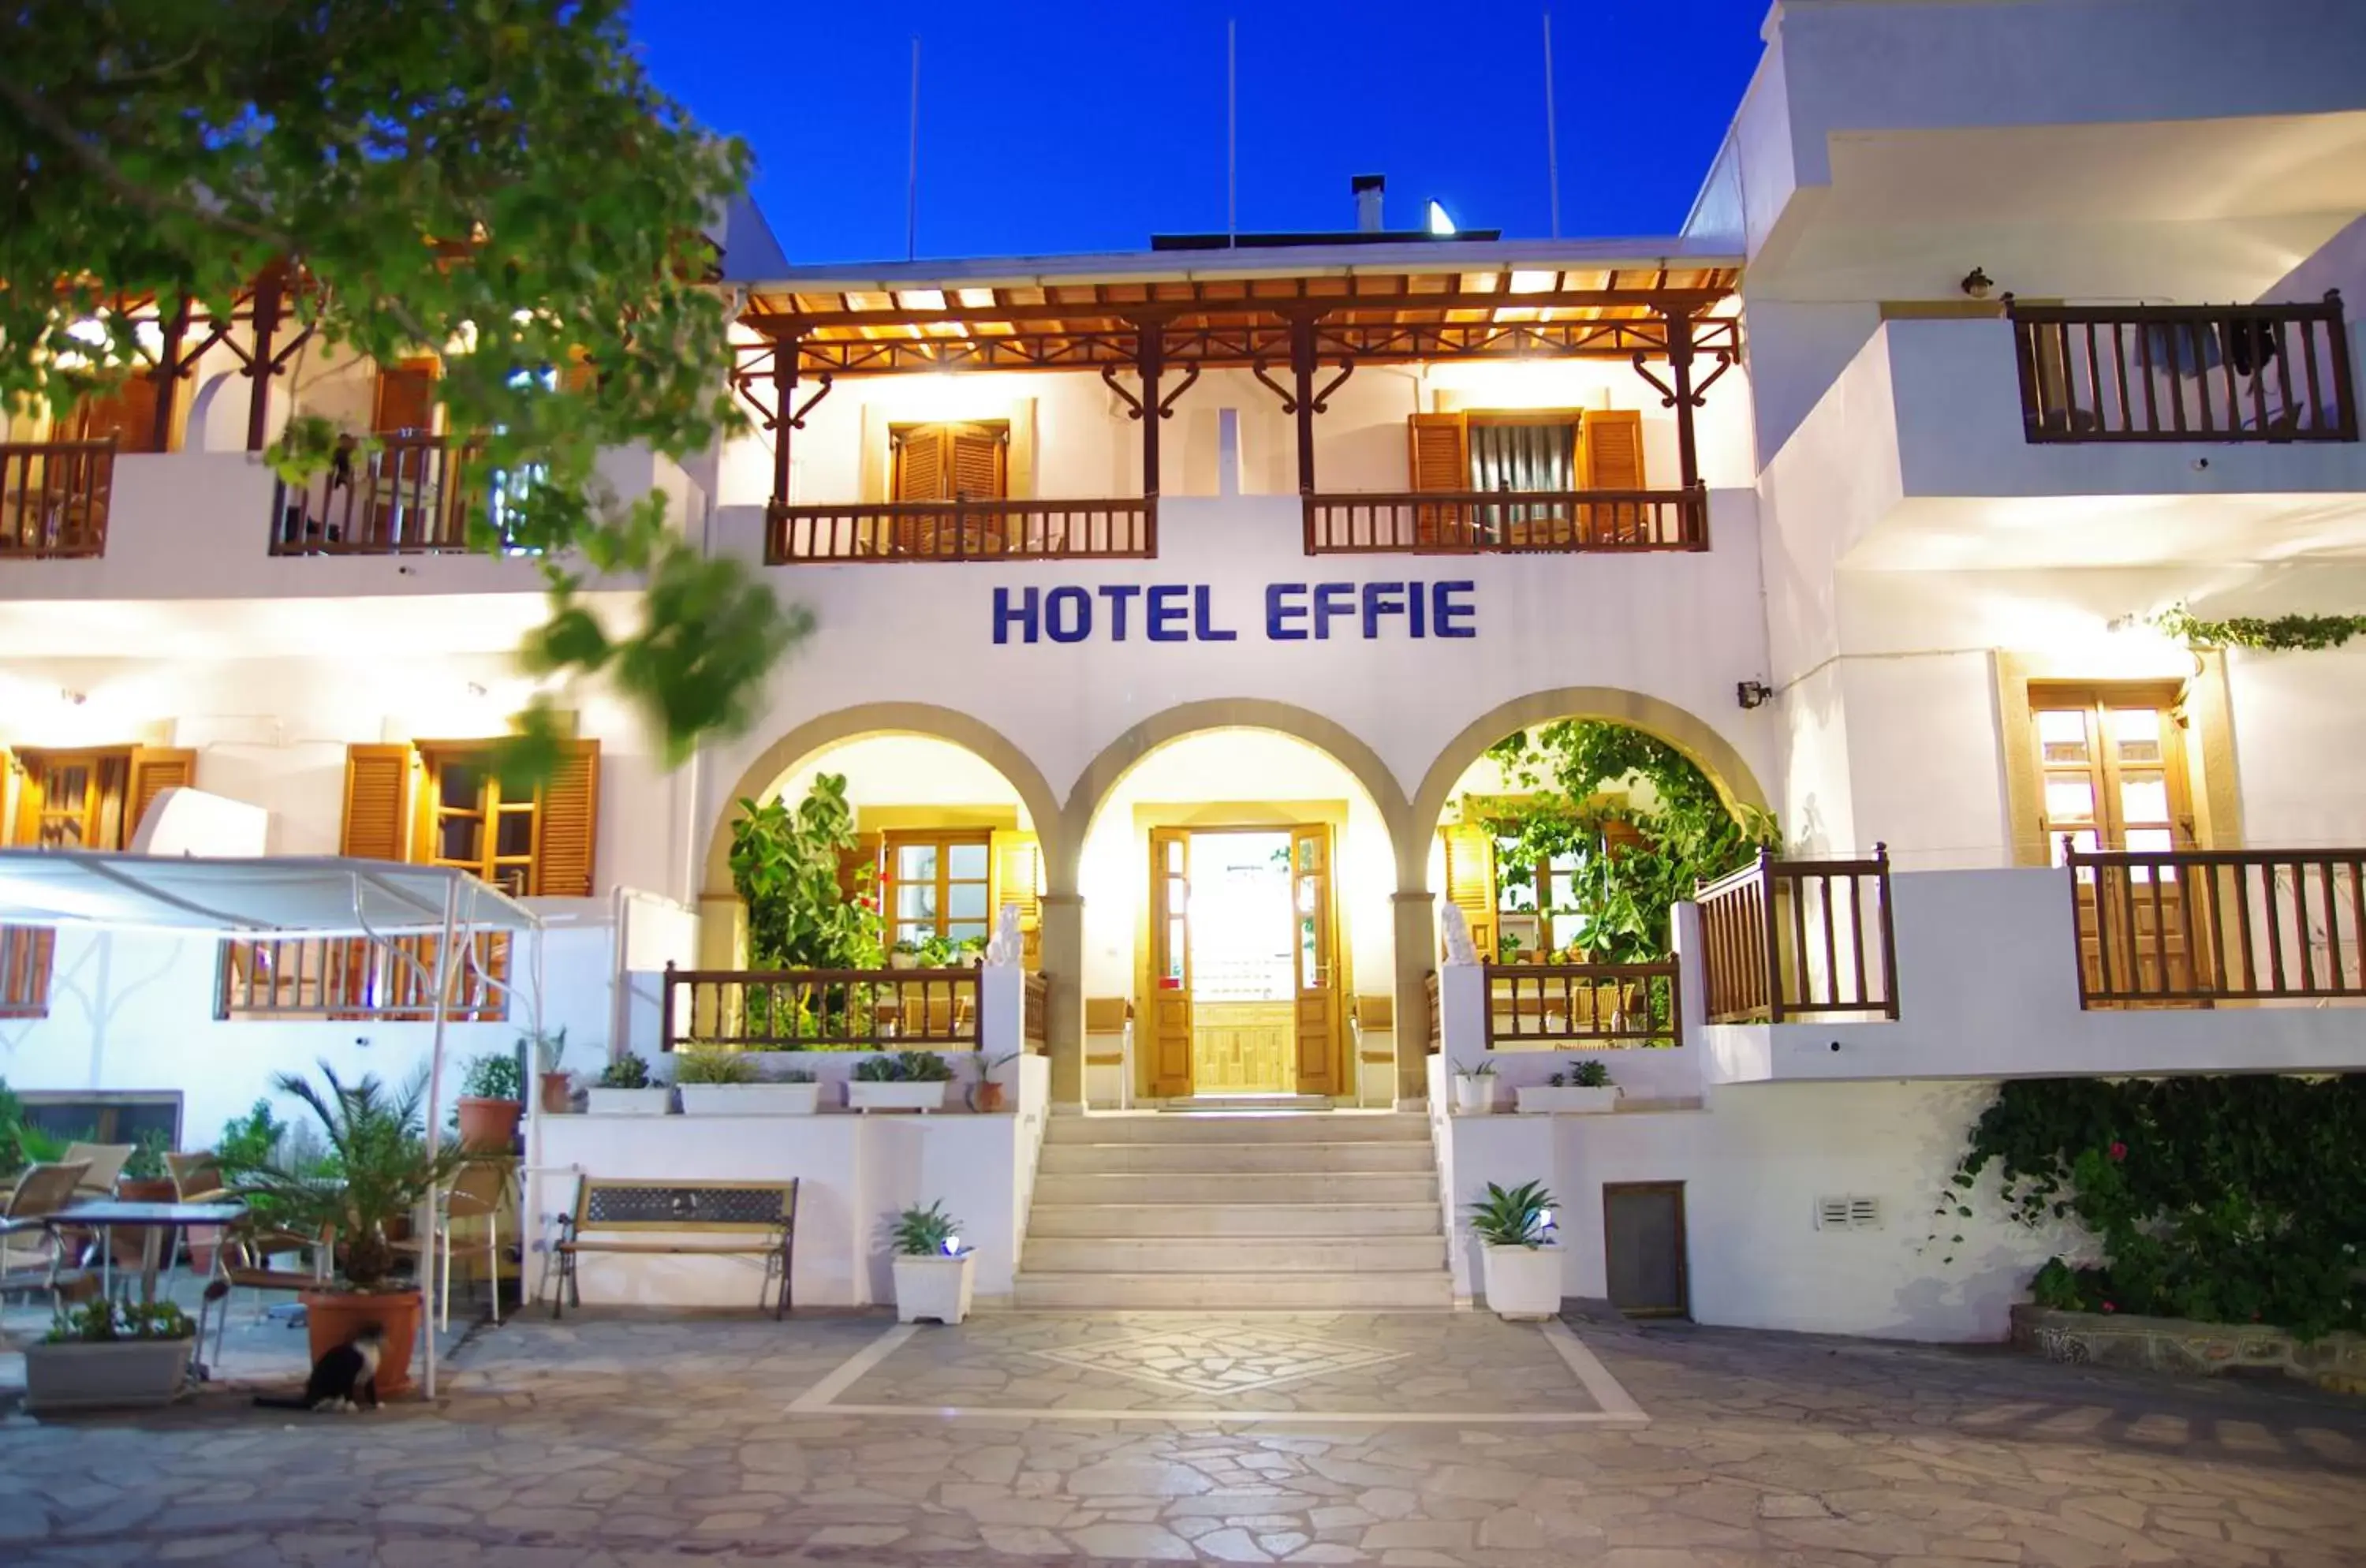 Facade/entrance, Property Building in Effie Hotel